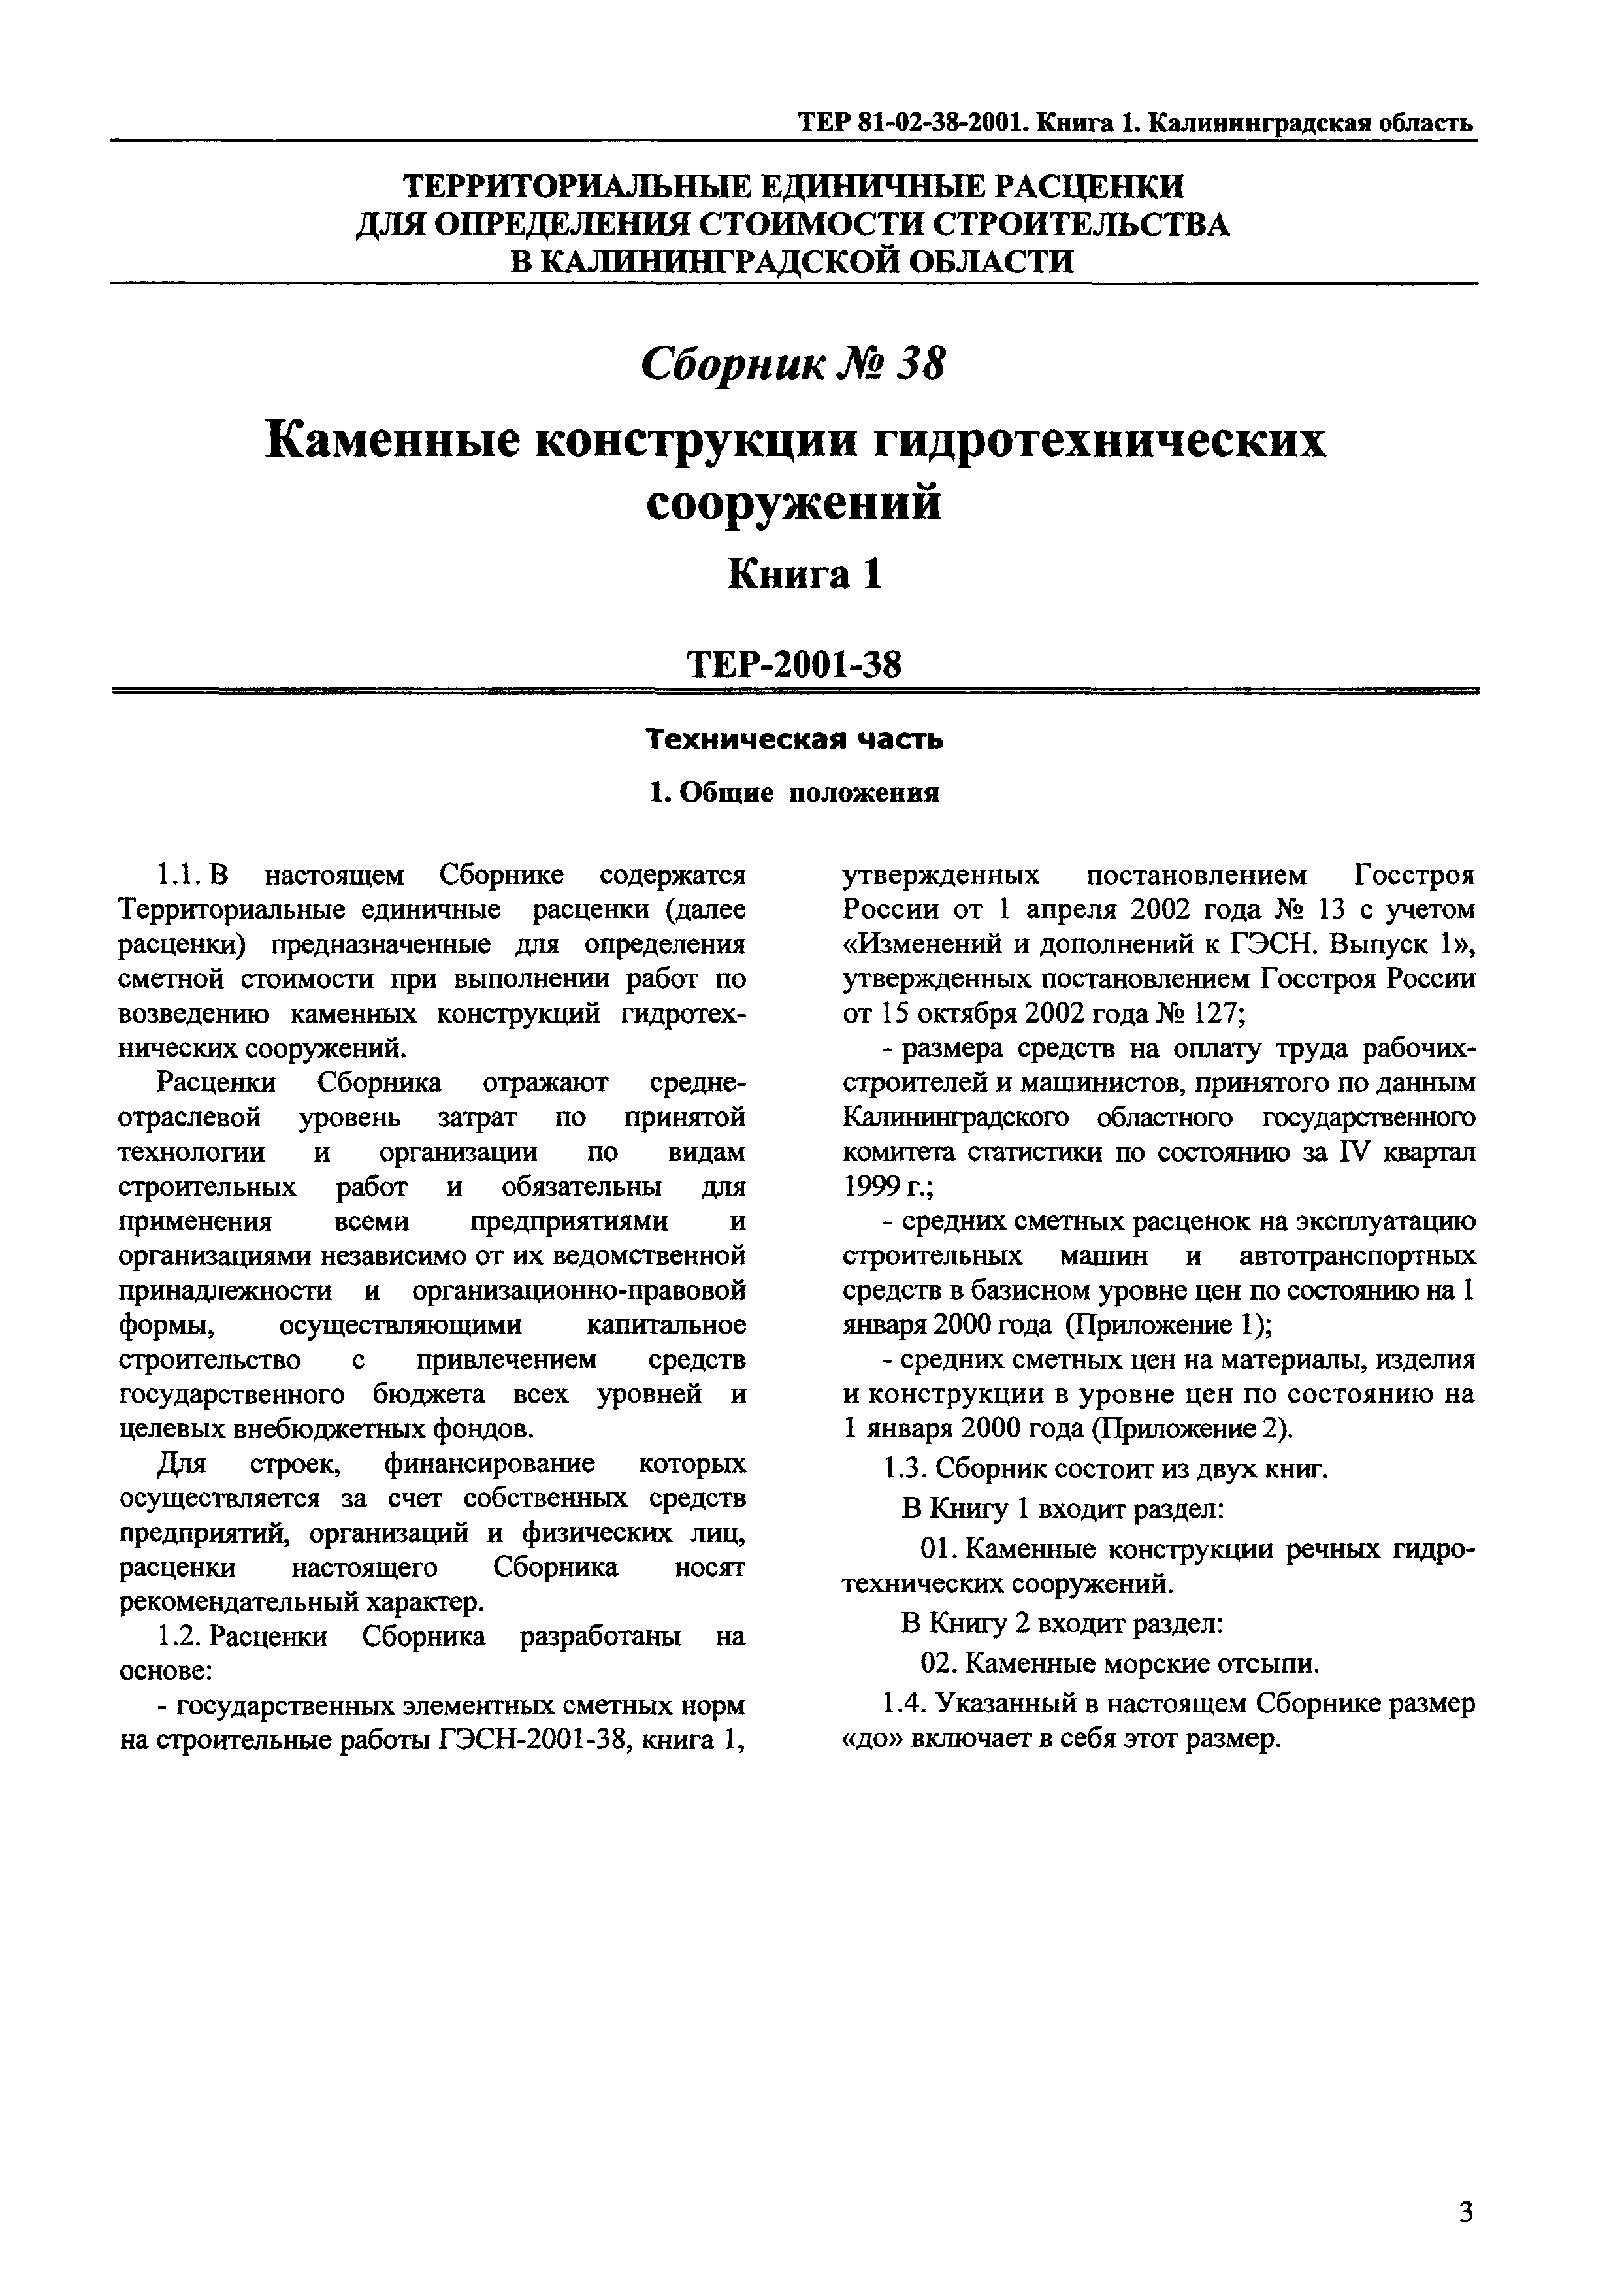 ТЕР Калининградская область 2001-38